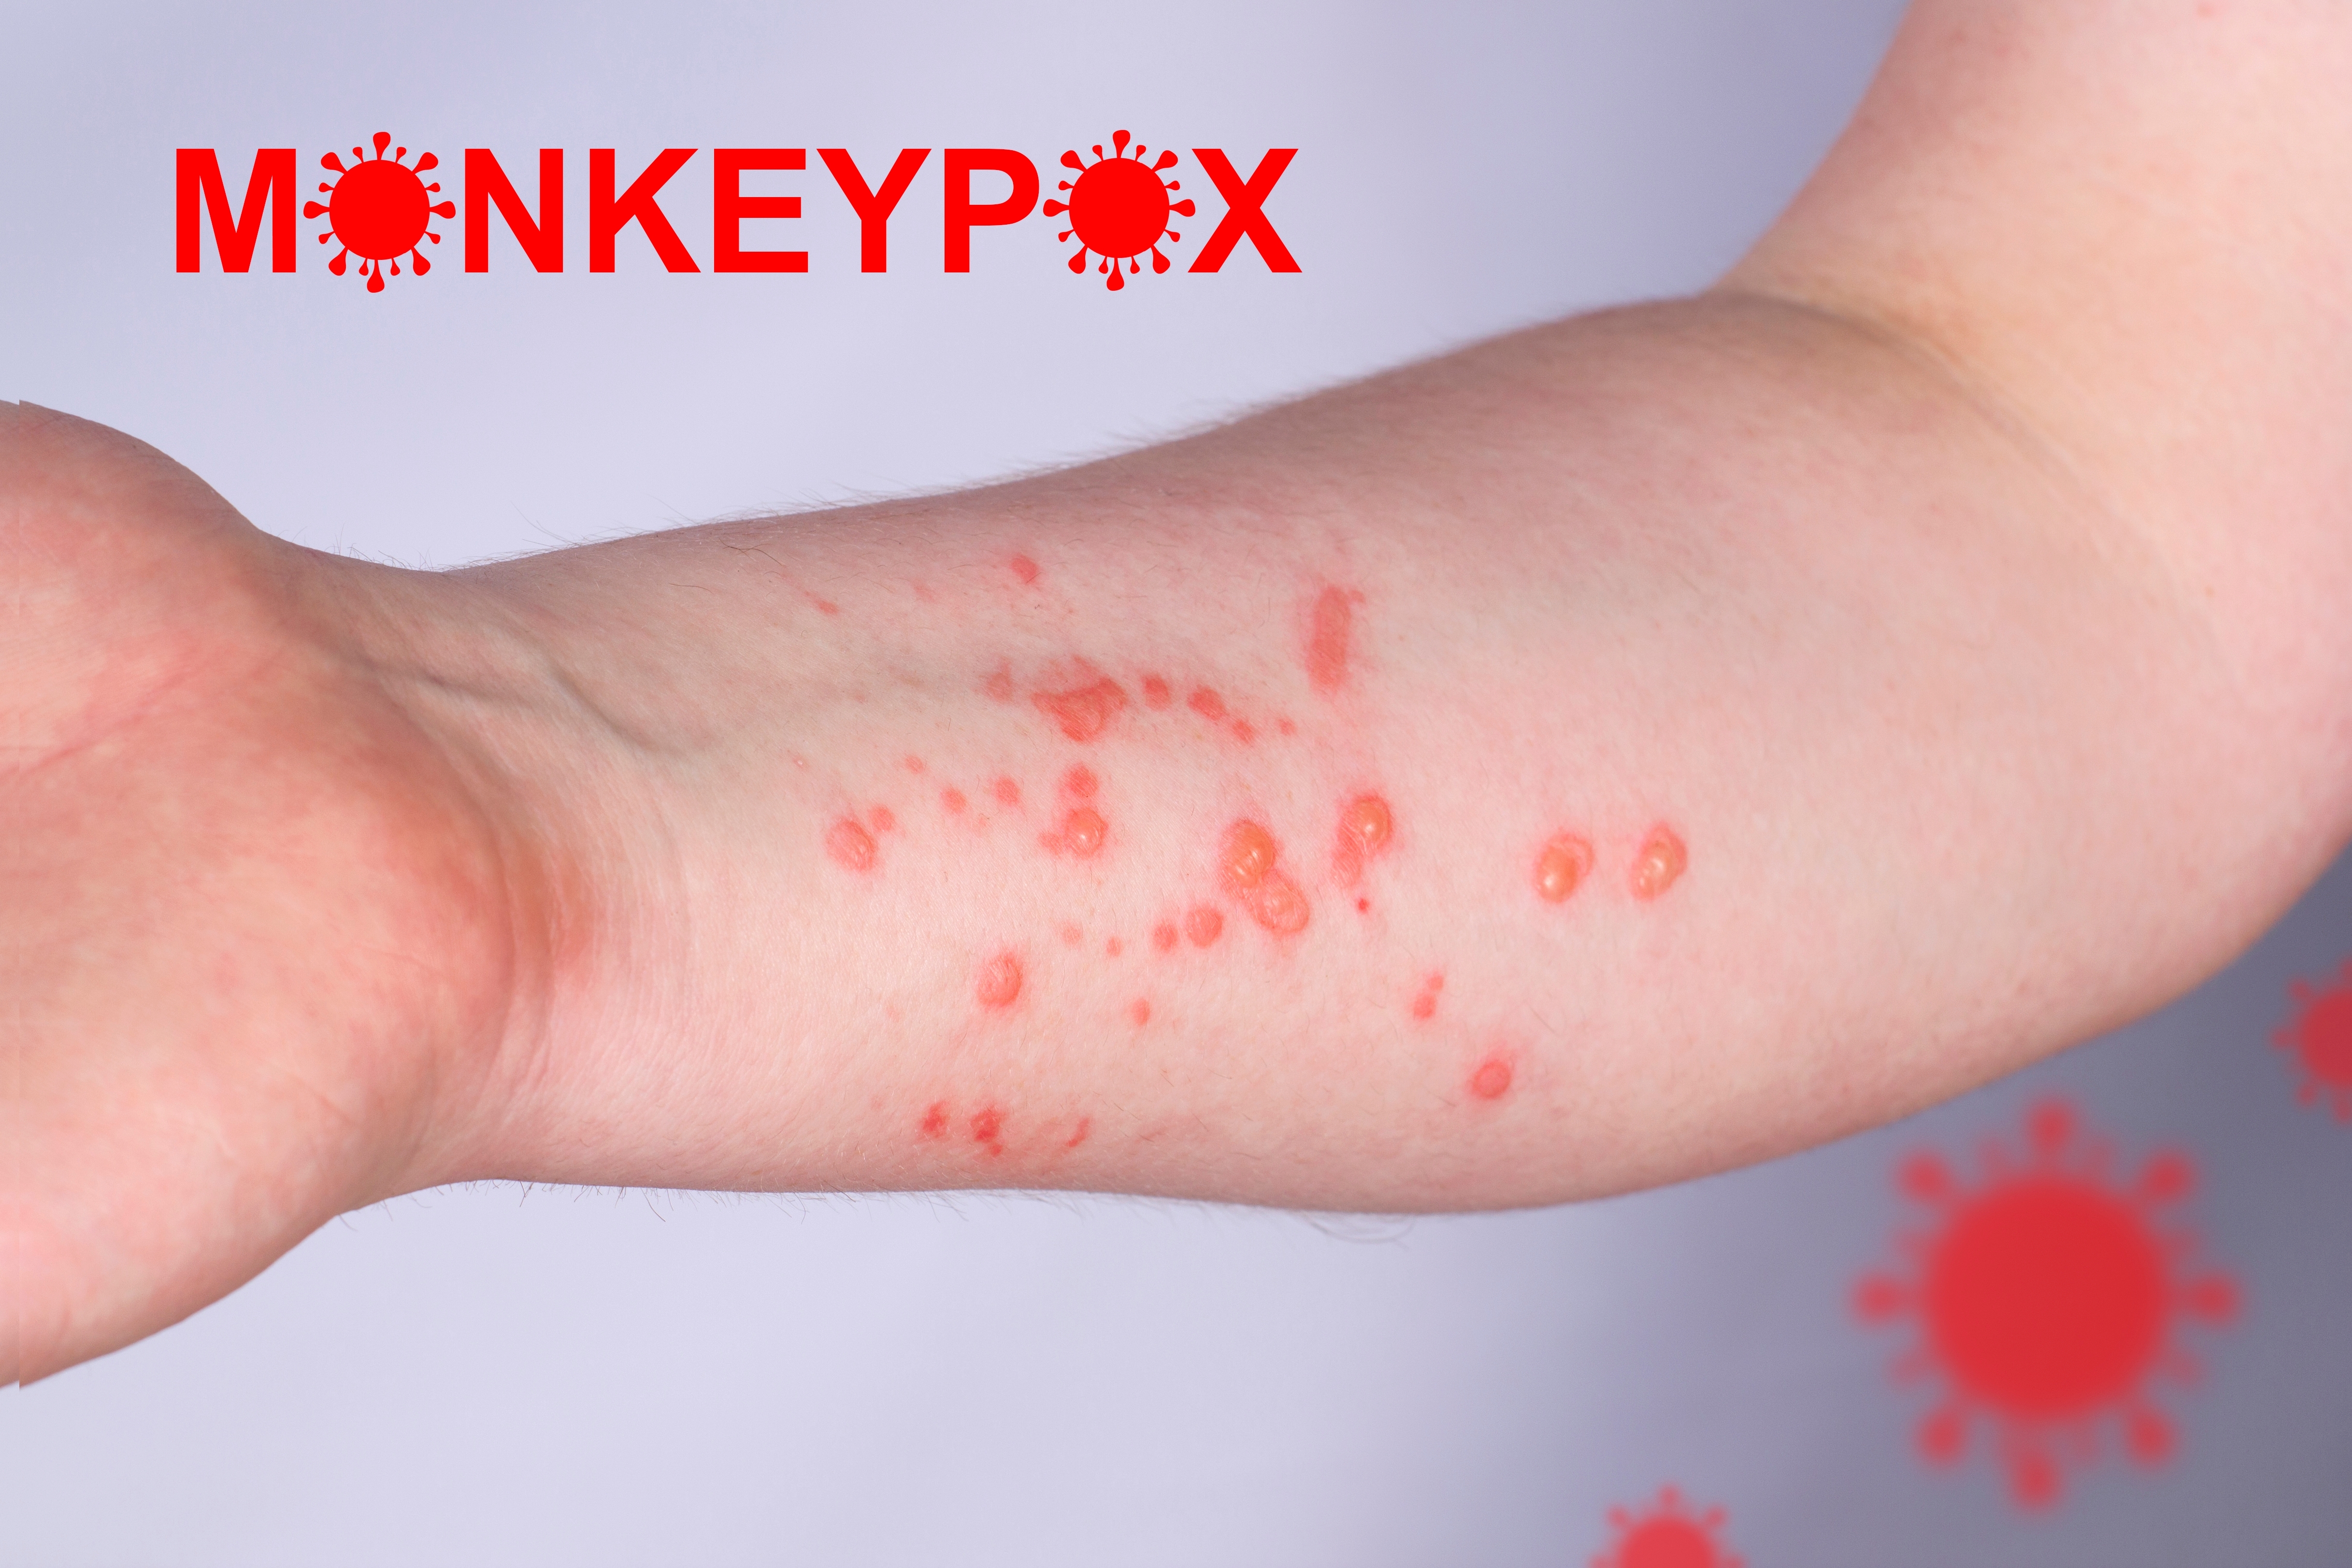 CDC a ridicat nivelul de alertă privind variola maimuței. Când este recomandată purtarea măștii de protecție